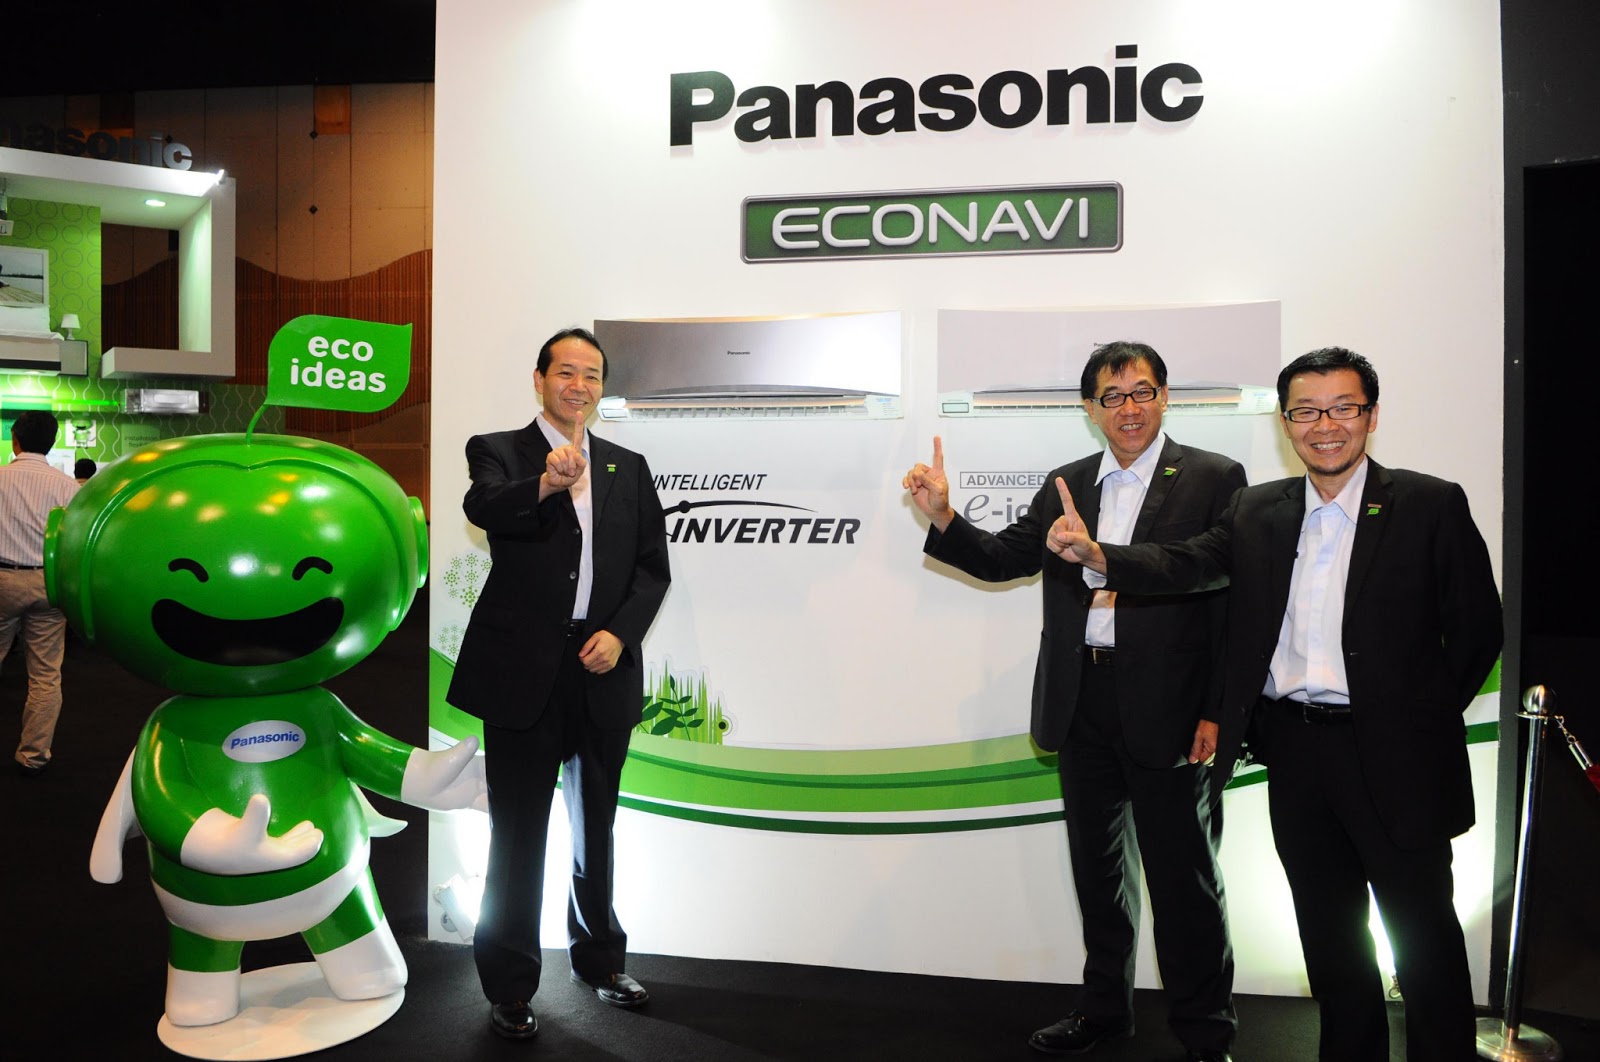 Tìm hiểu về các tính năng của máy lạnh Panasonic